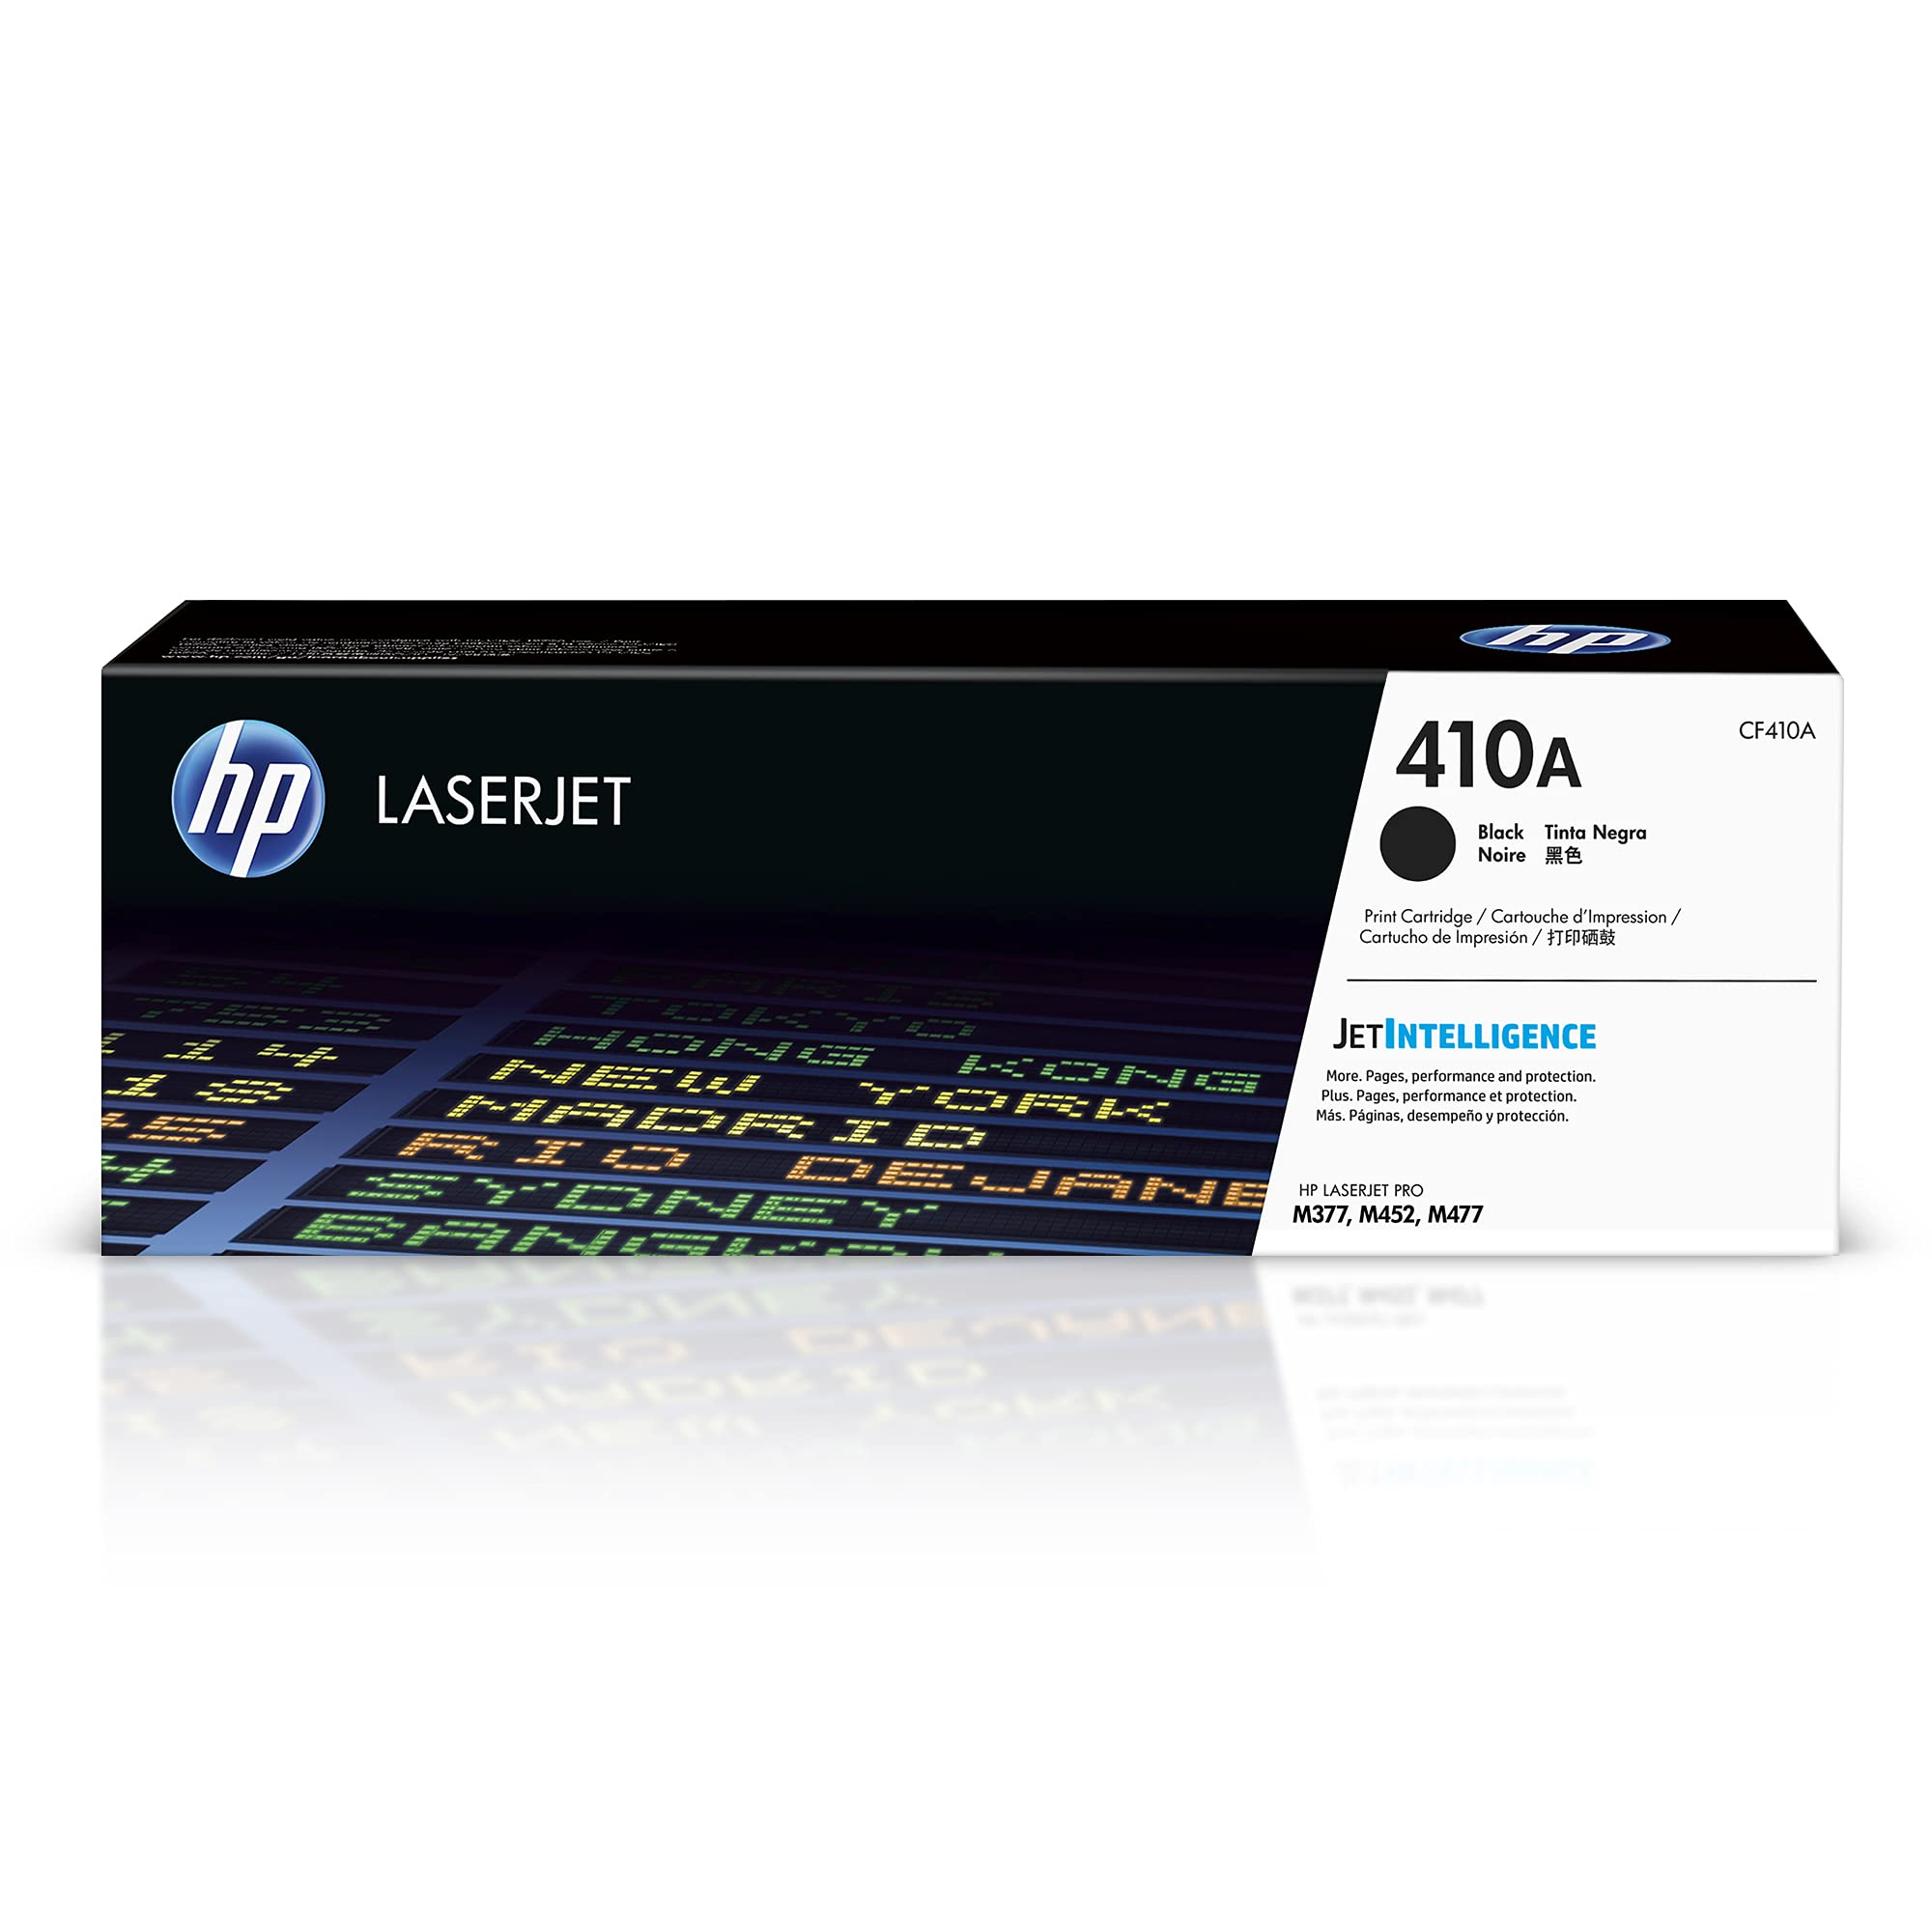 HP 410A 黑色碳粉盒 |适用于 Color LaserJet Pro M452 系列、Color Las...